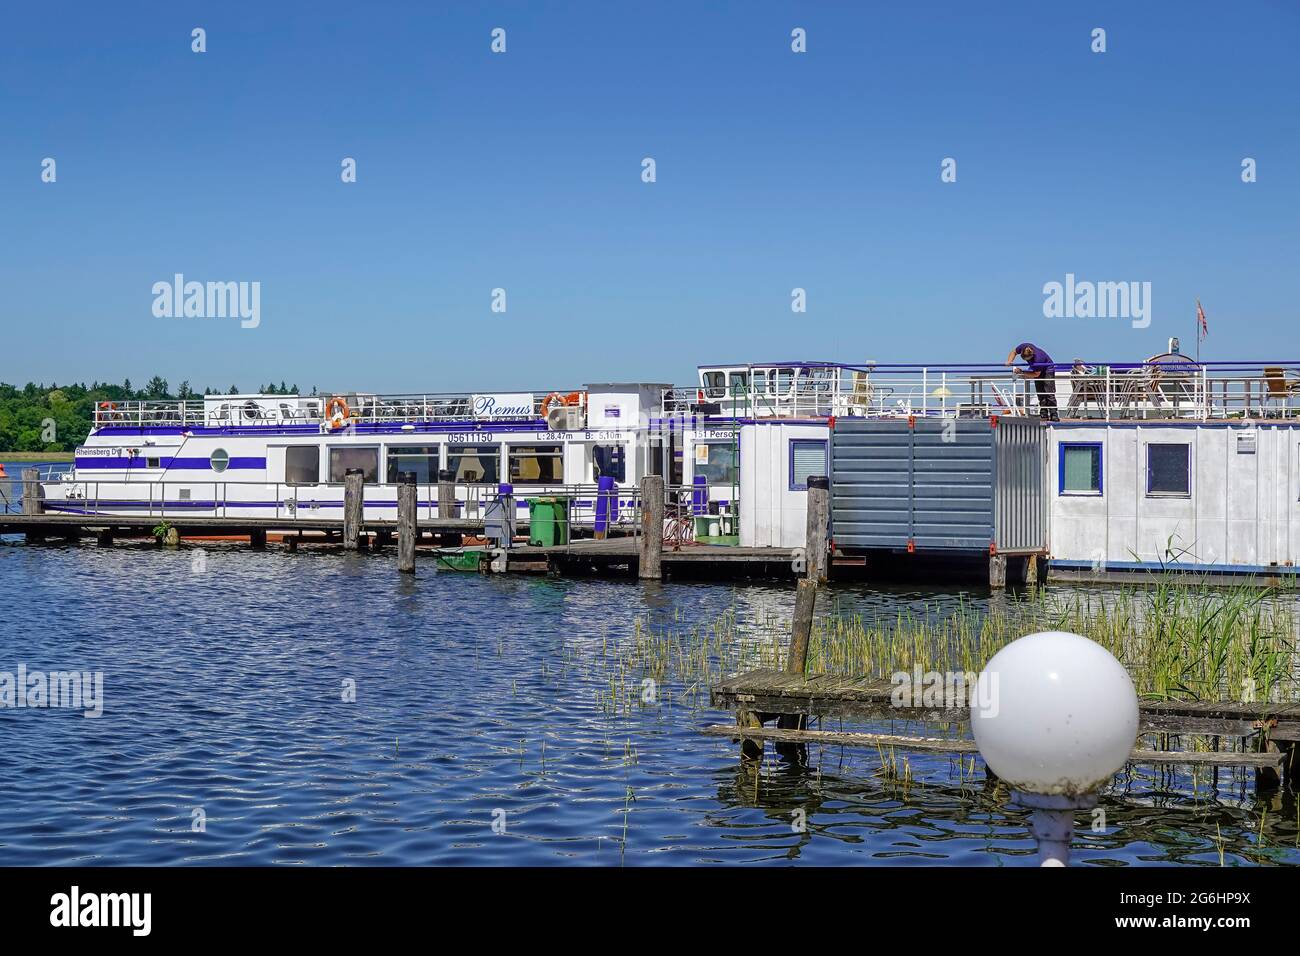 Schiffsanleger, Ausflugsboote, Grienericksee, Rheinsberg, Landkreis Ostprignitz-Ruppin, Brandenburg, Deutschland Stock Photo